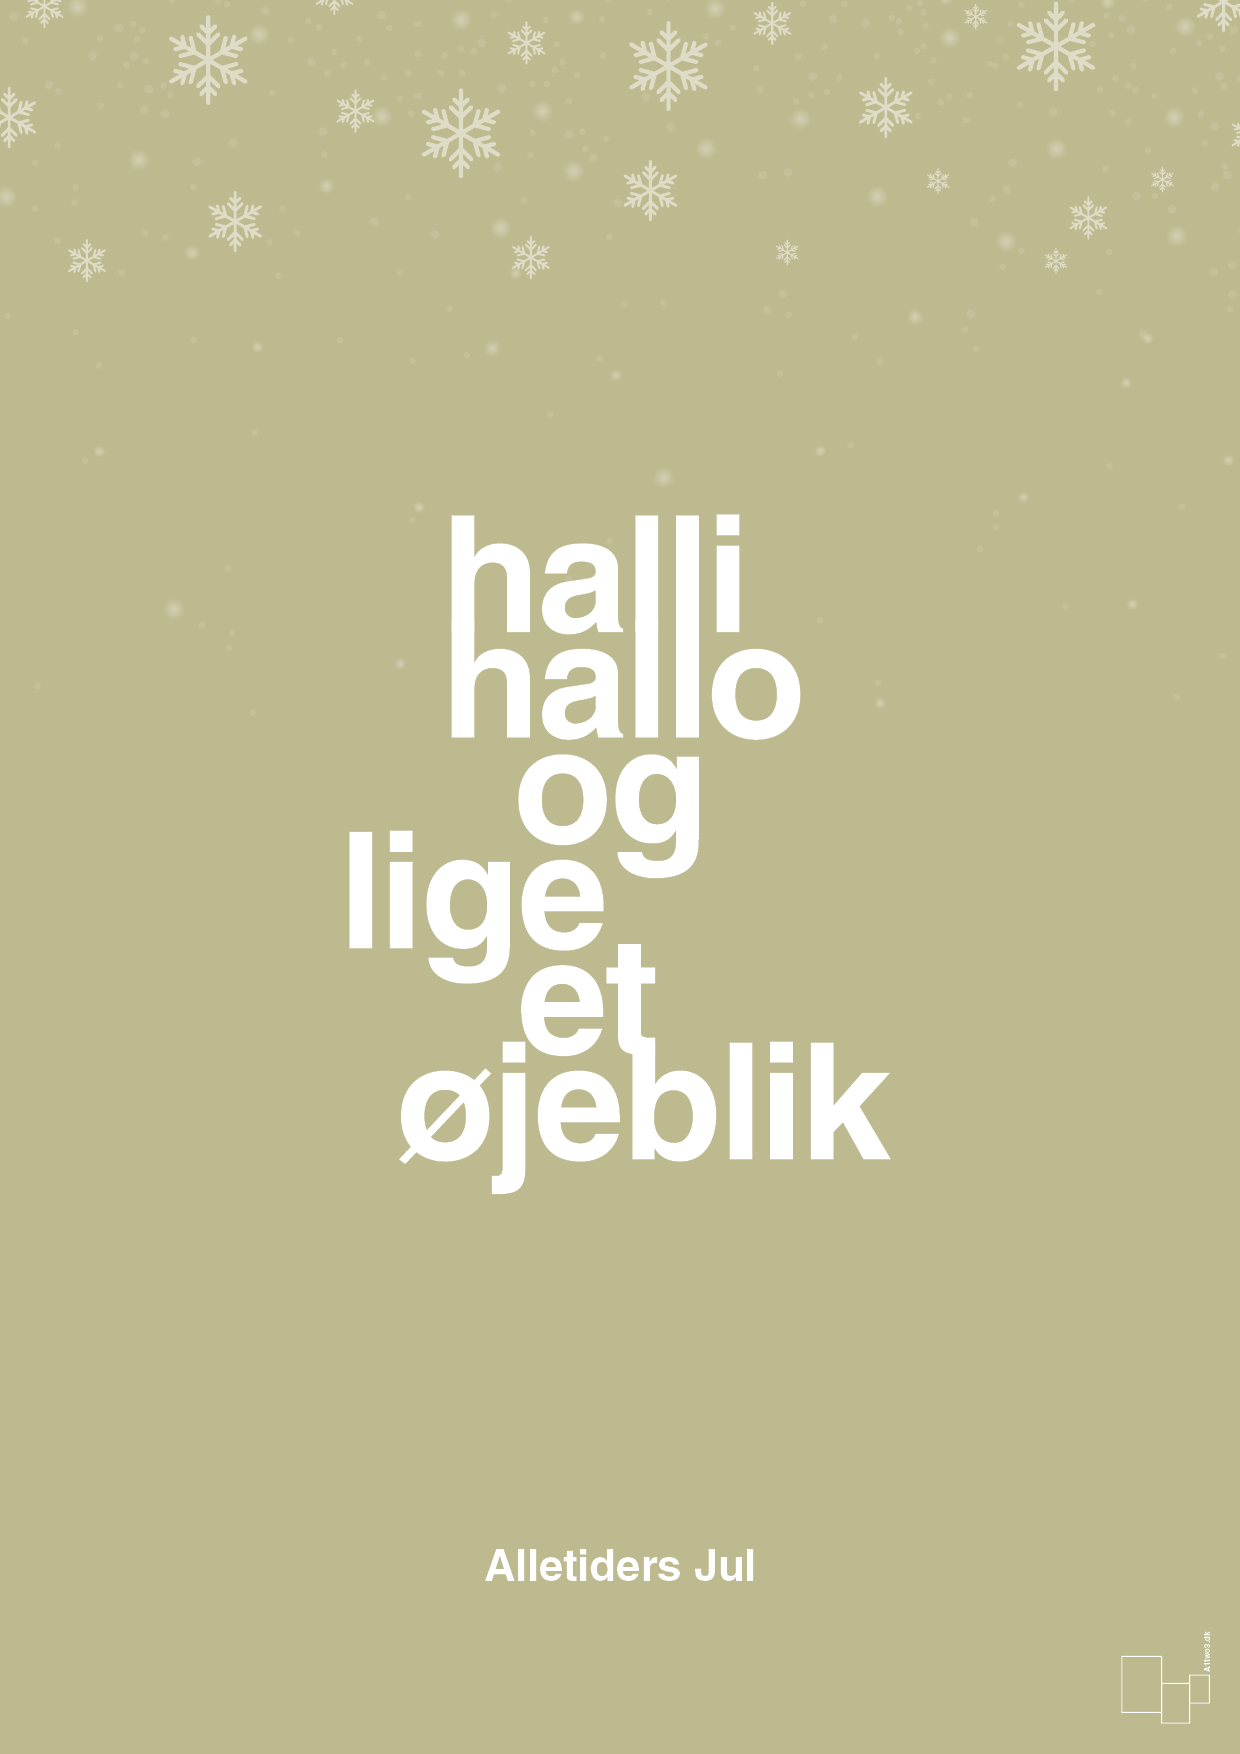 halli hallo og lige et øjeblik - Plakat med Begivenheder i Back to Nature